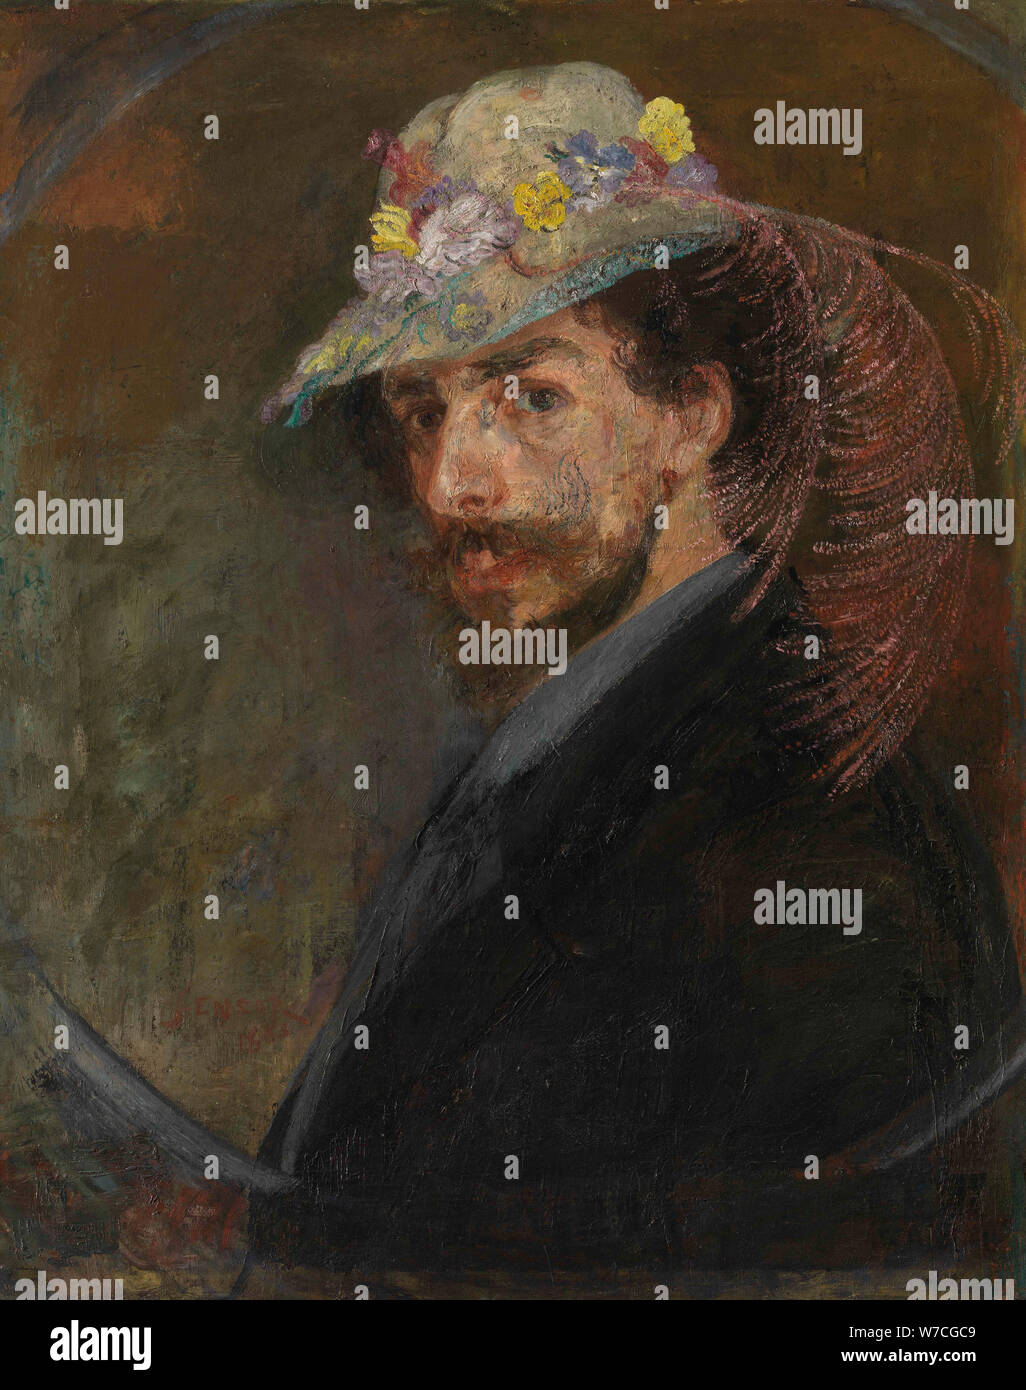 Autoritratto con cappello fiorito, 1883. Foto Stock